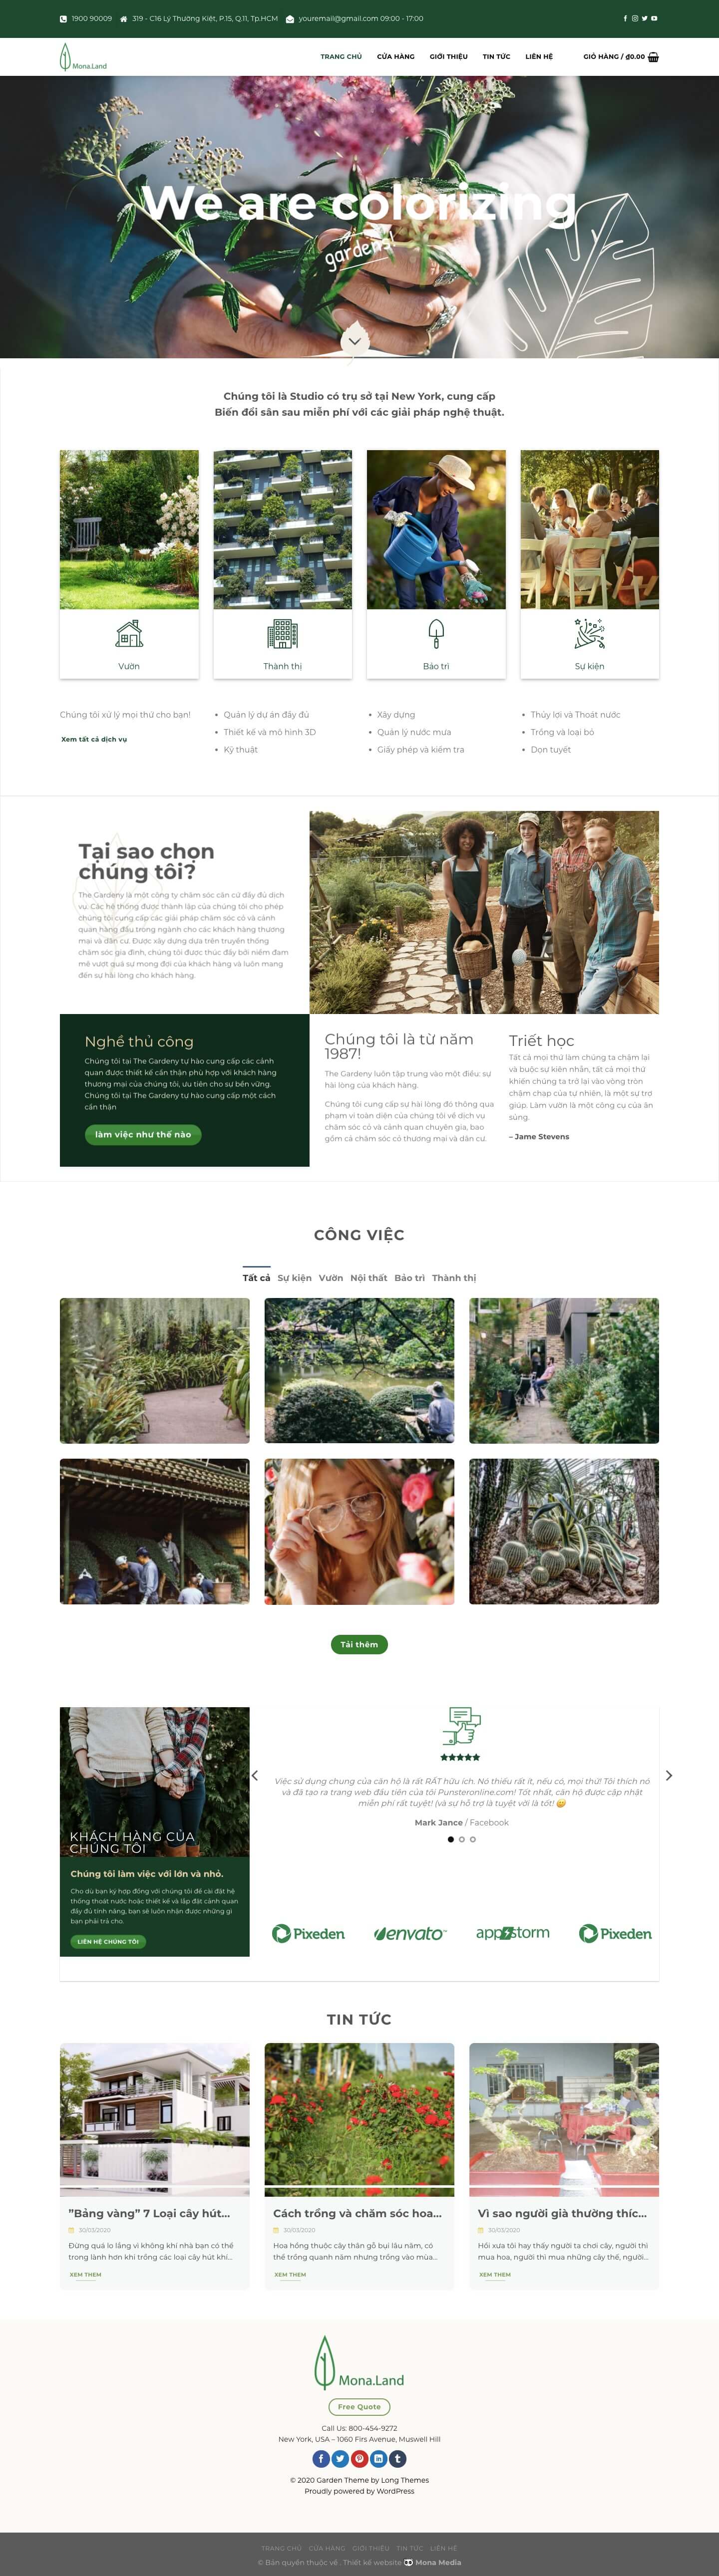 Mẫu website giới thiệu dịch vụ giải pháp làm vườn